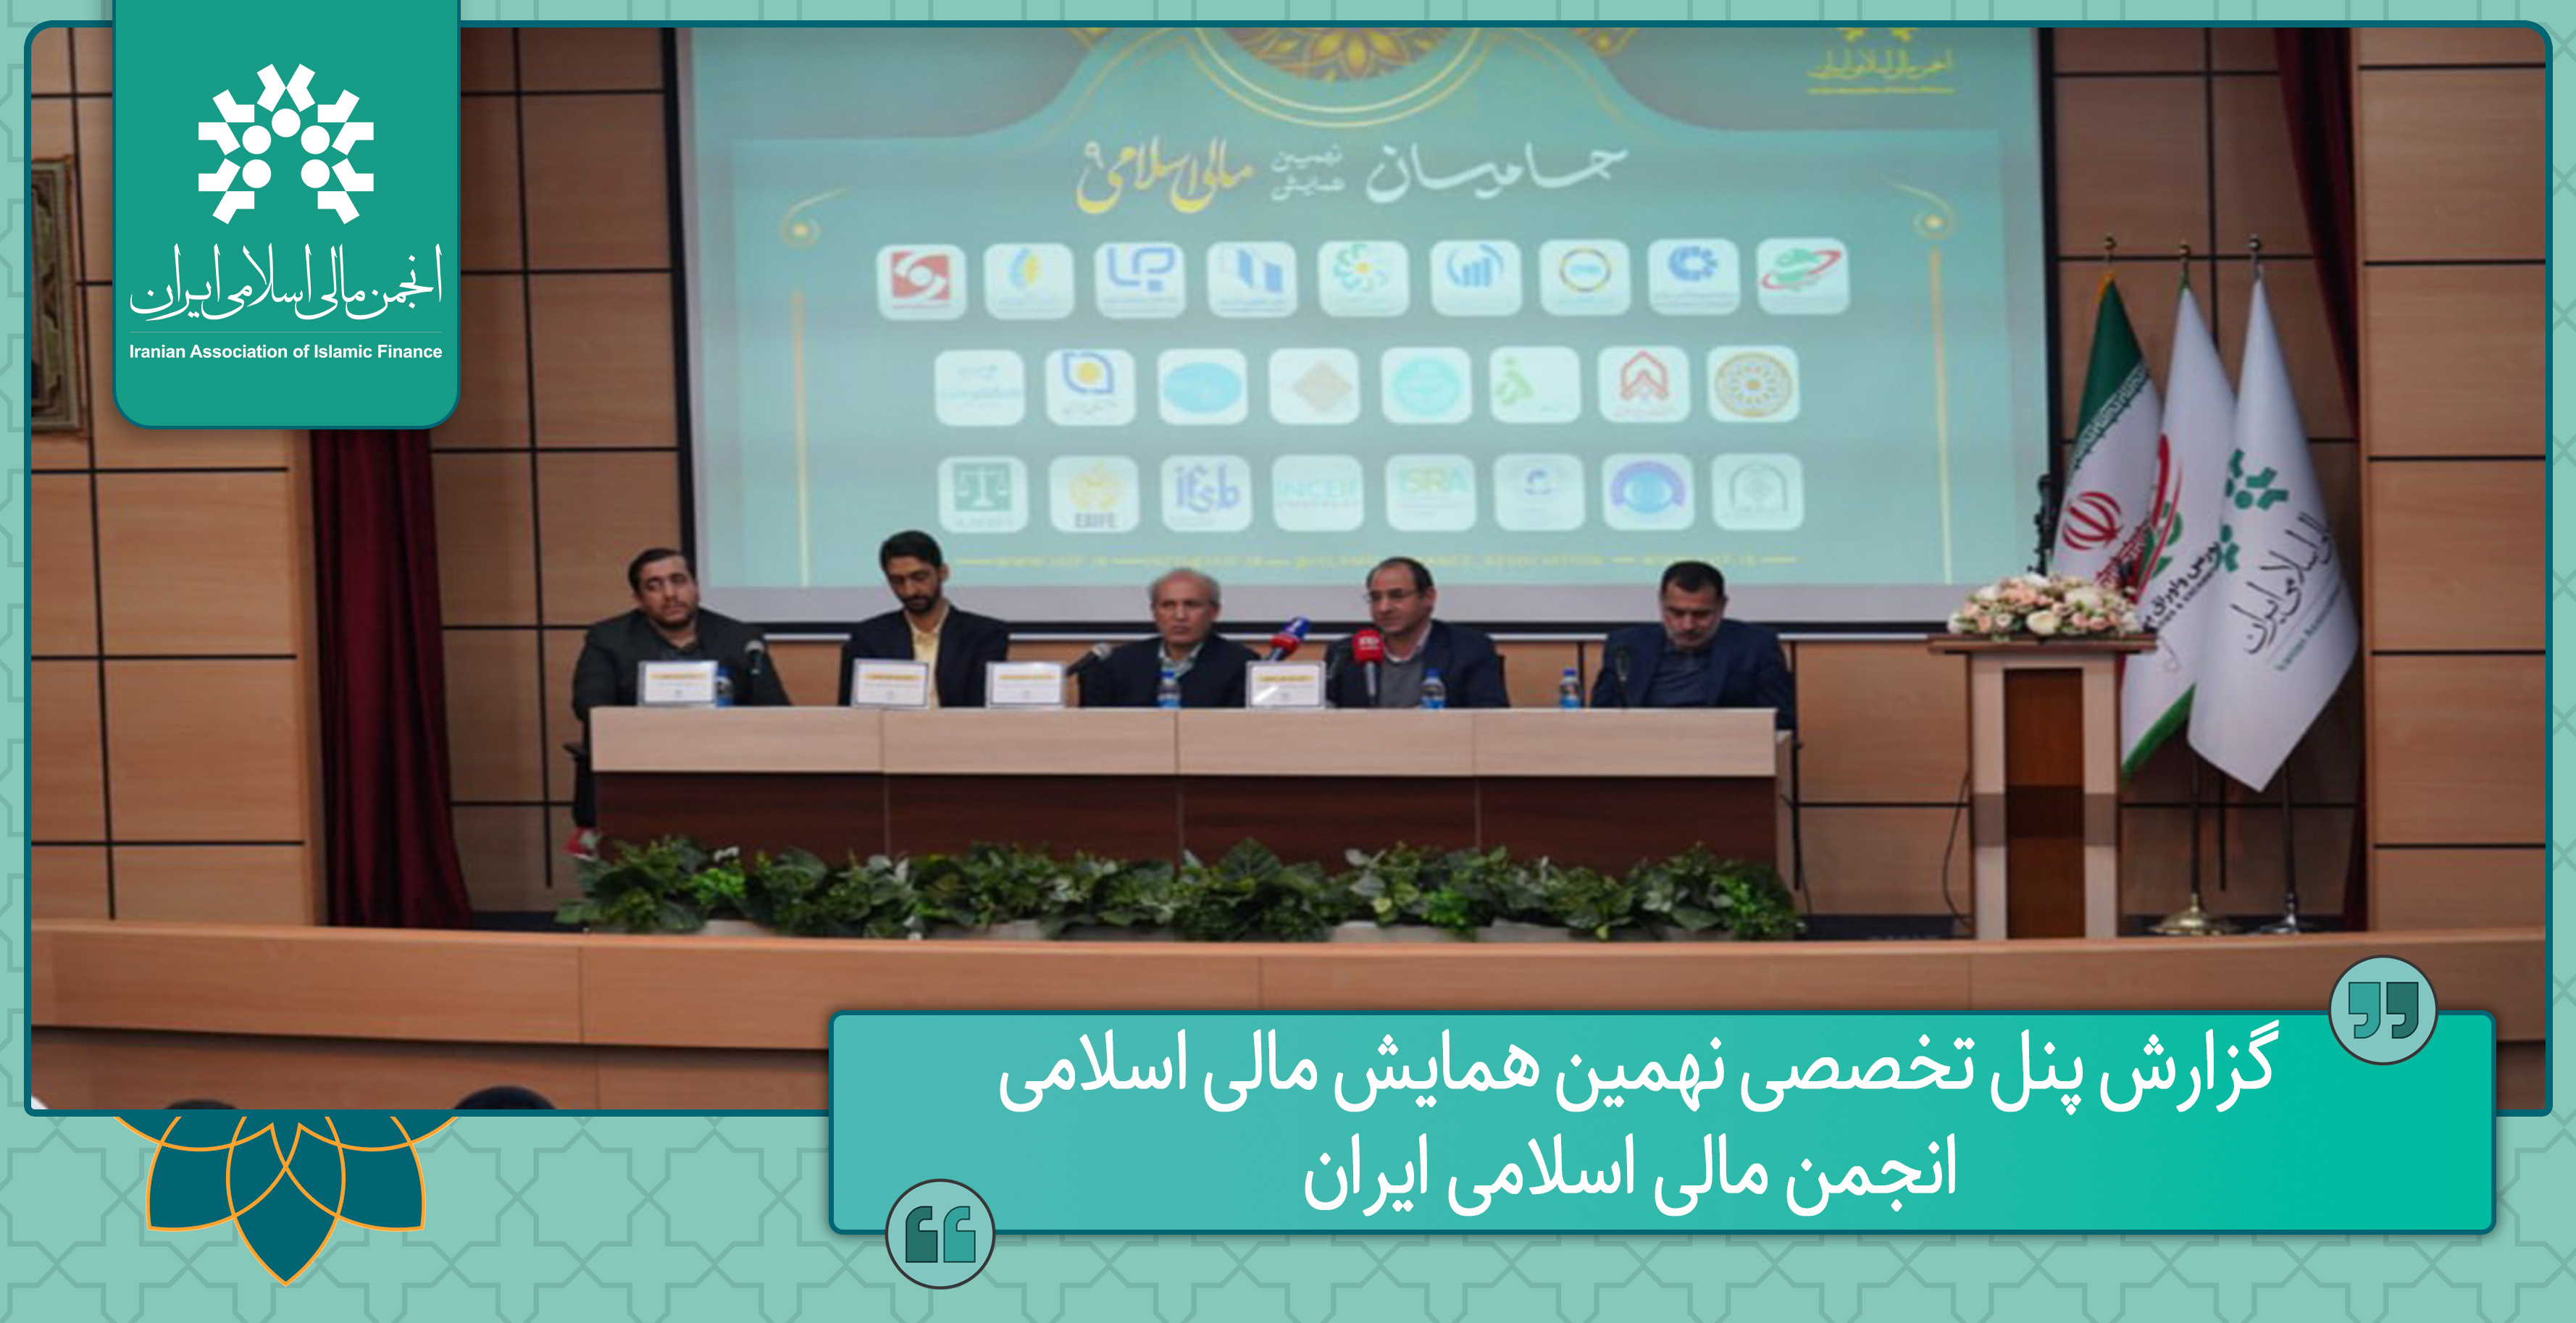 گزارش پنل تخصصی نهمین همایش مالی اسلامی انجمن مالی اسلامی ایران